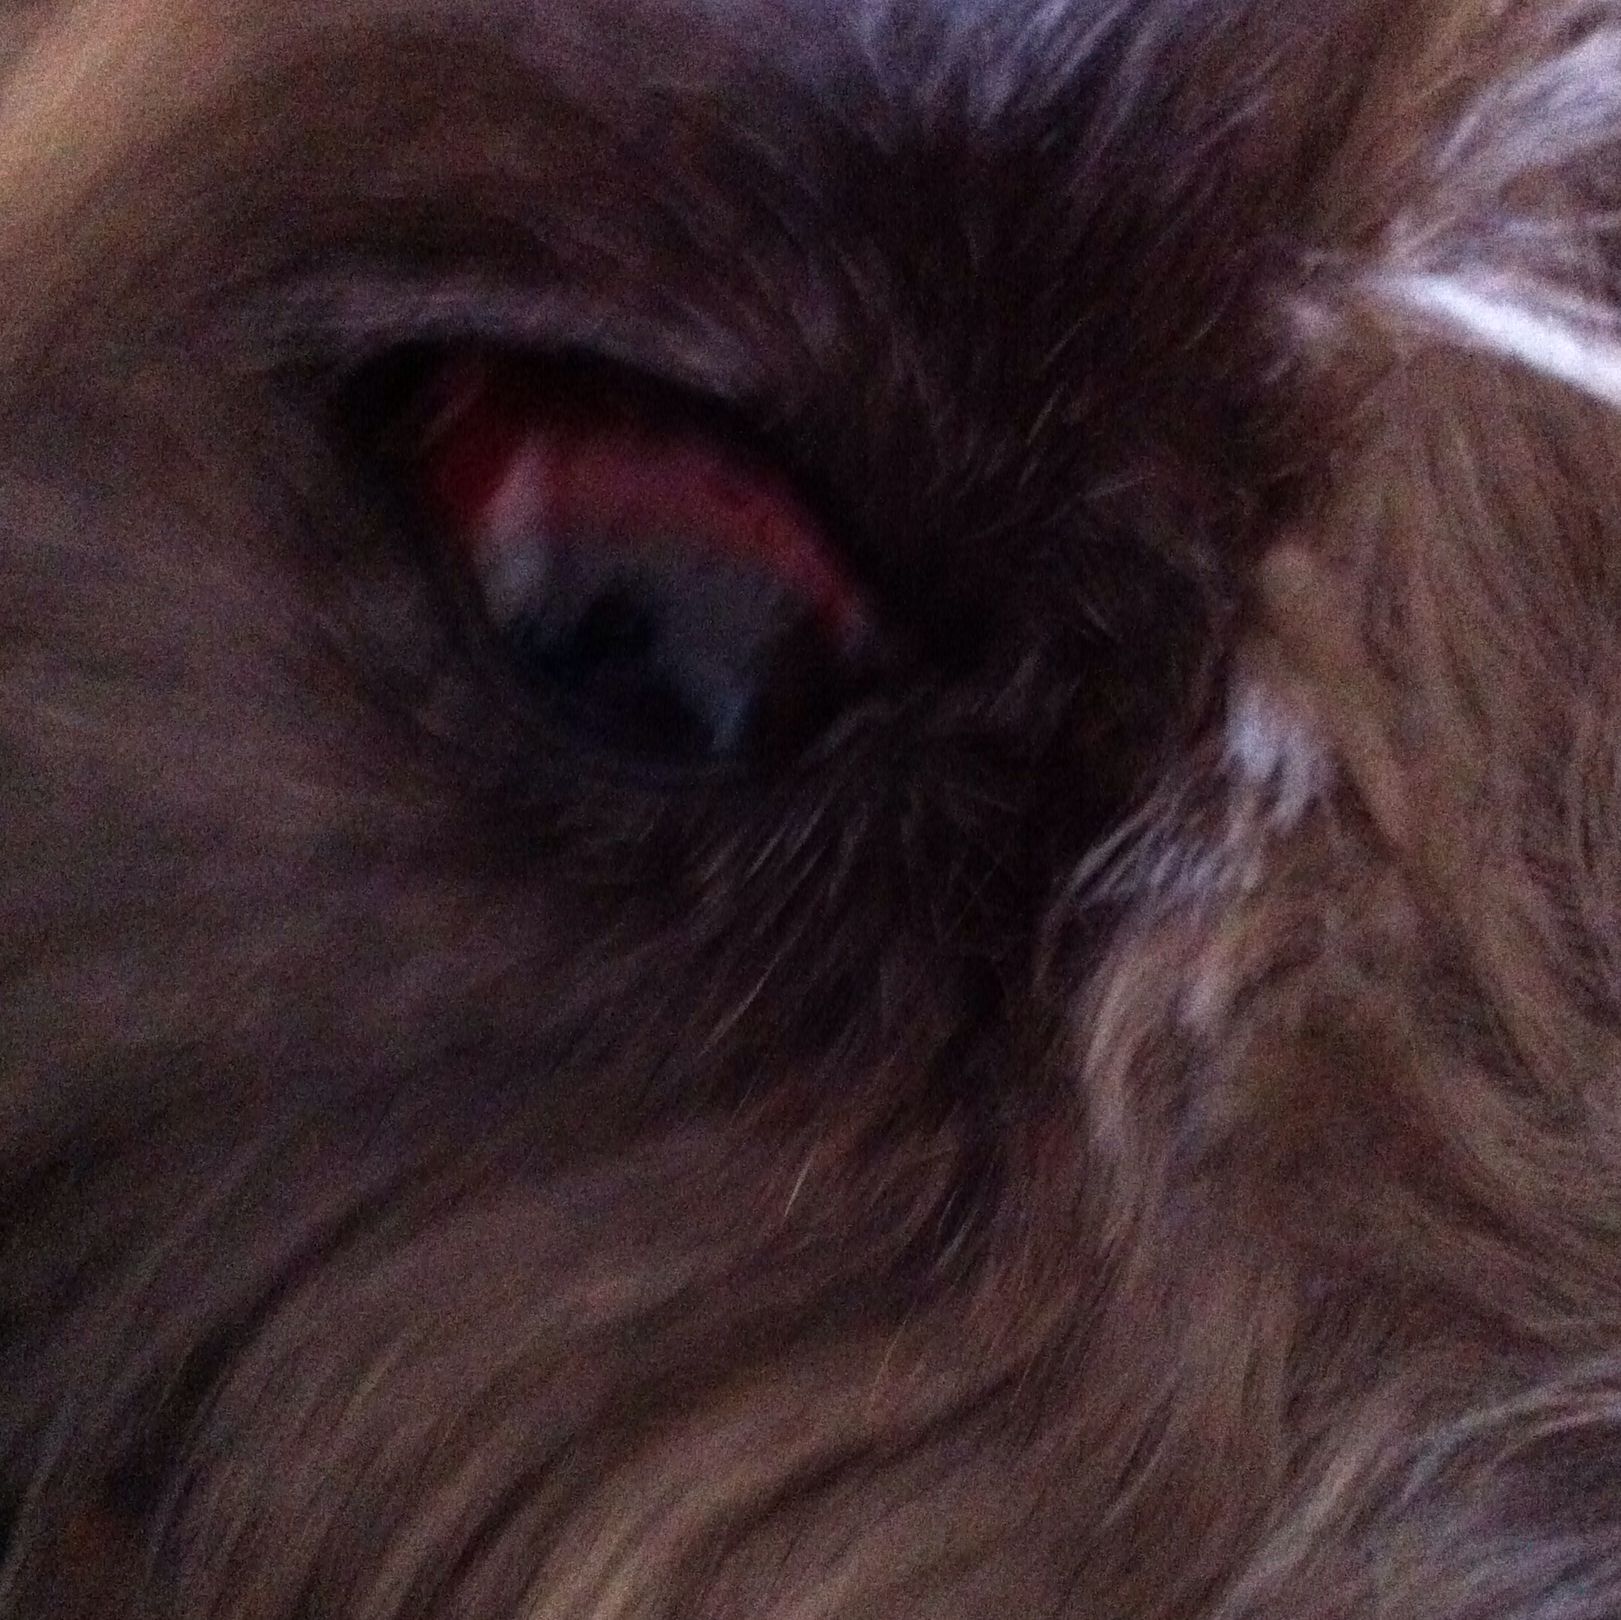 Hund nach Kampf rotes Auge!? (Gesundheit, Tiere, Augen)